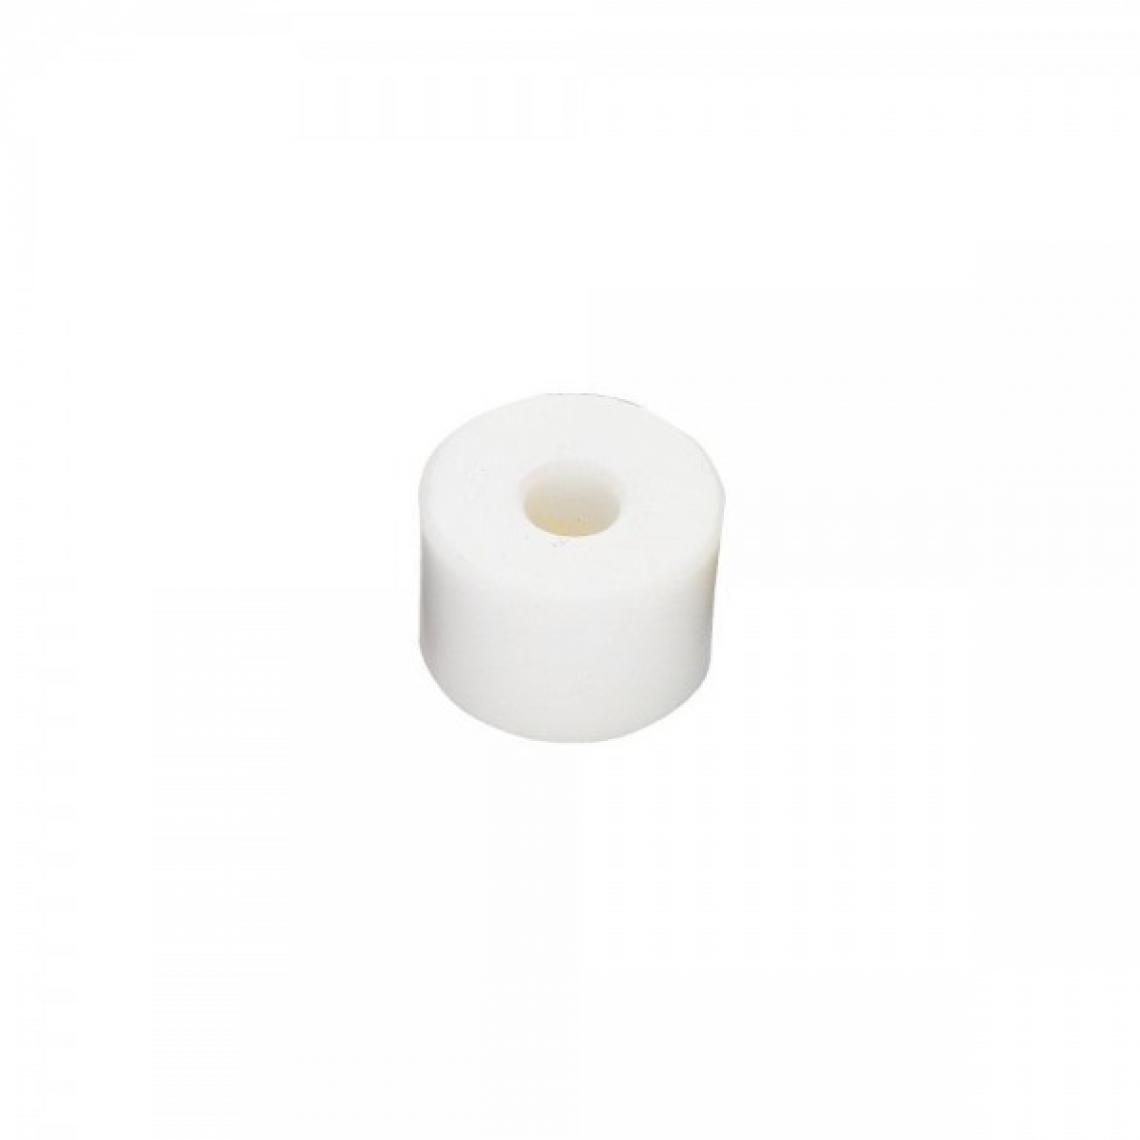 Facom - Embout de rechange Nylon blanc 60mm pour massette - Packs d'outillage électroportatif